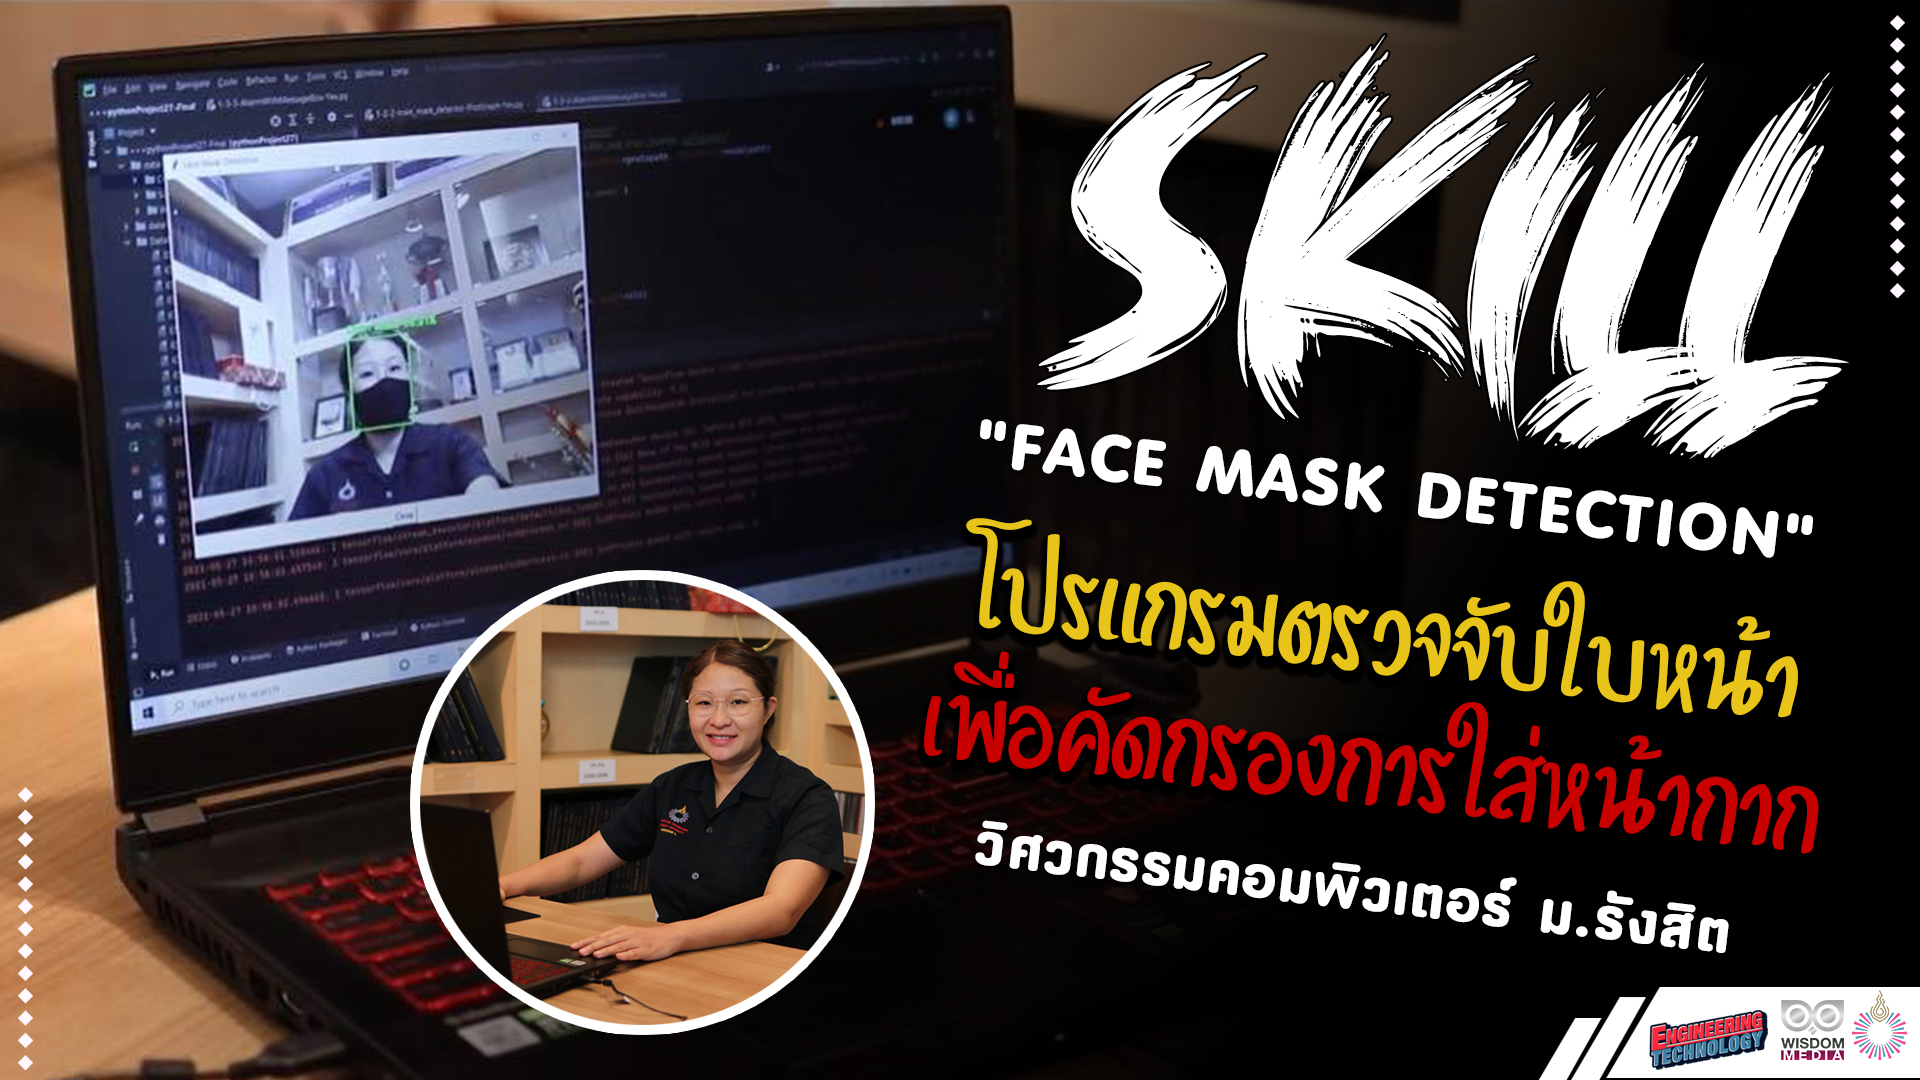 เรียน ม.รังสิต อยากได้อะไรต้องได้ : SKILL Face Mask Detection ตรวจจับใบหน้าคัดกรองการใส่หน้ากาก